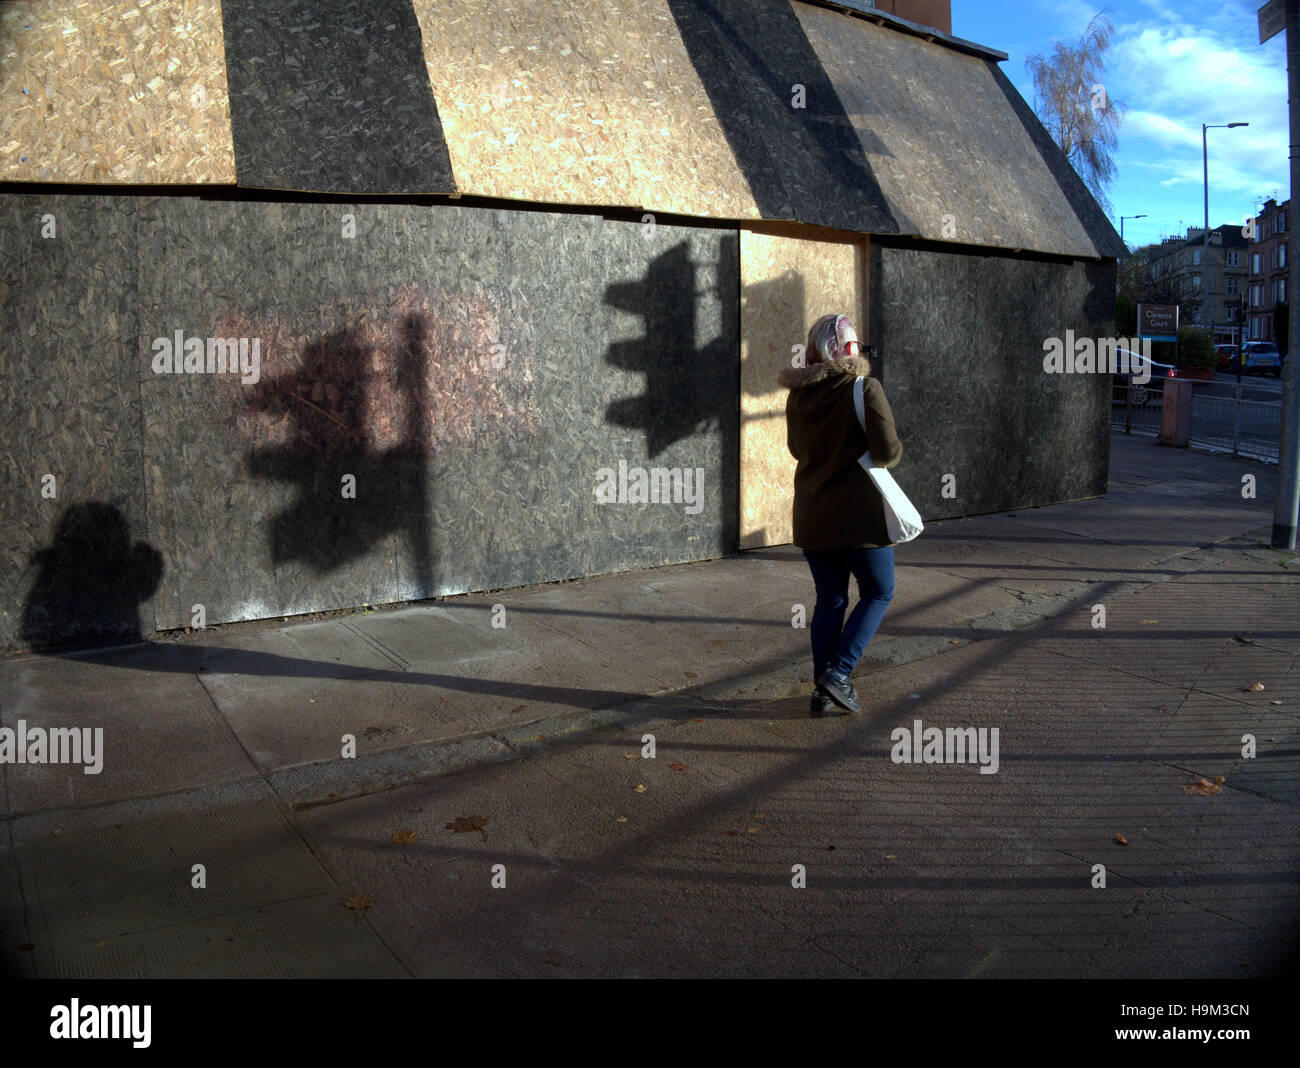 Basso sole invernale su Urban singola persona camminare da solo le ombre del semaforo Foto Stock